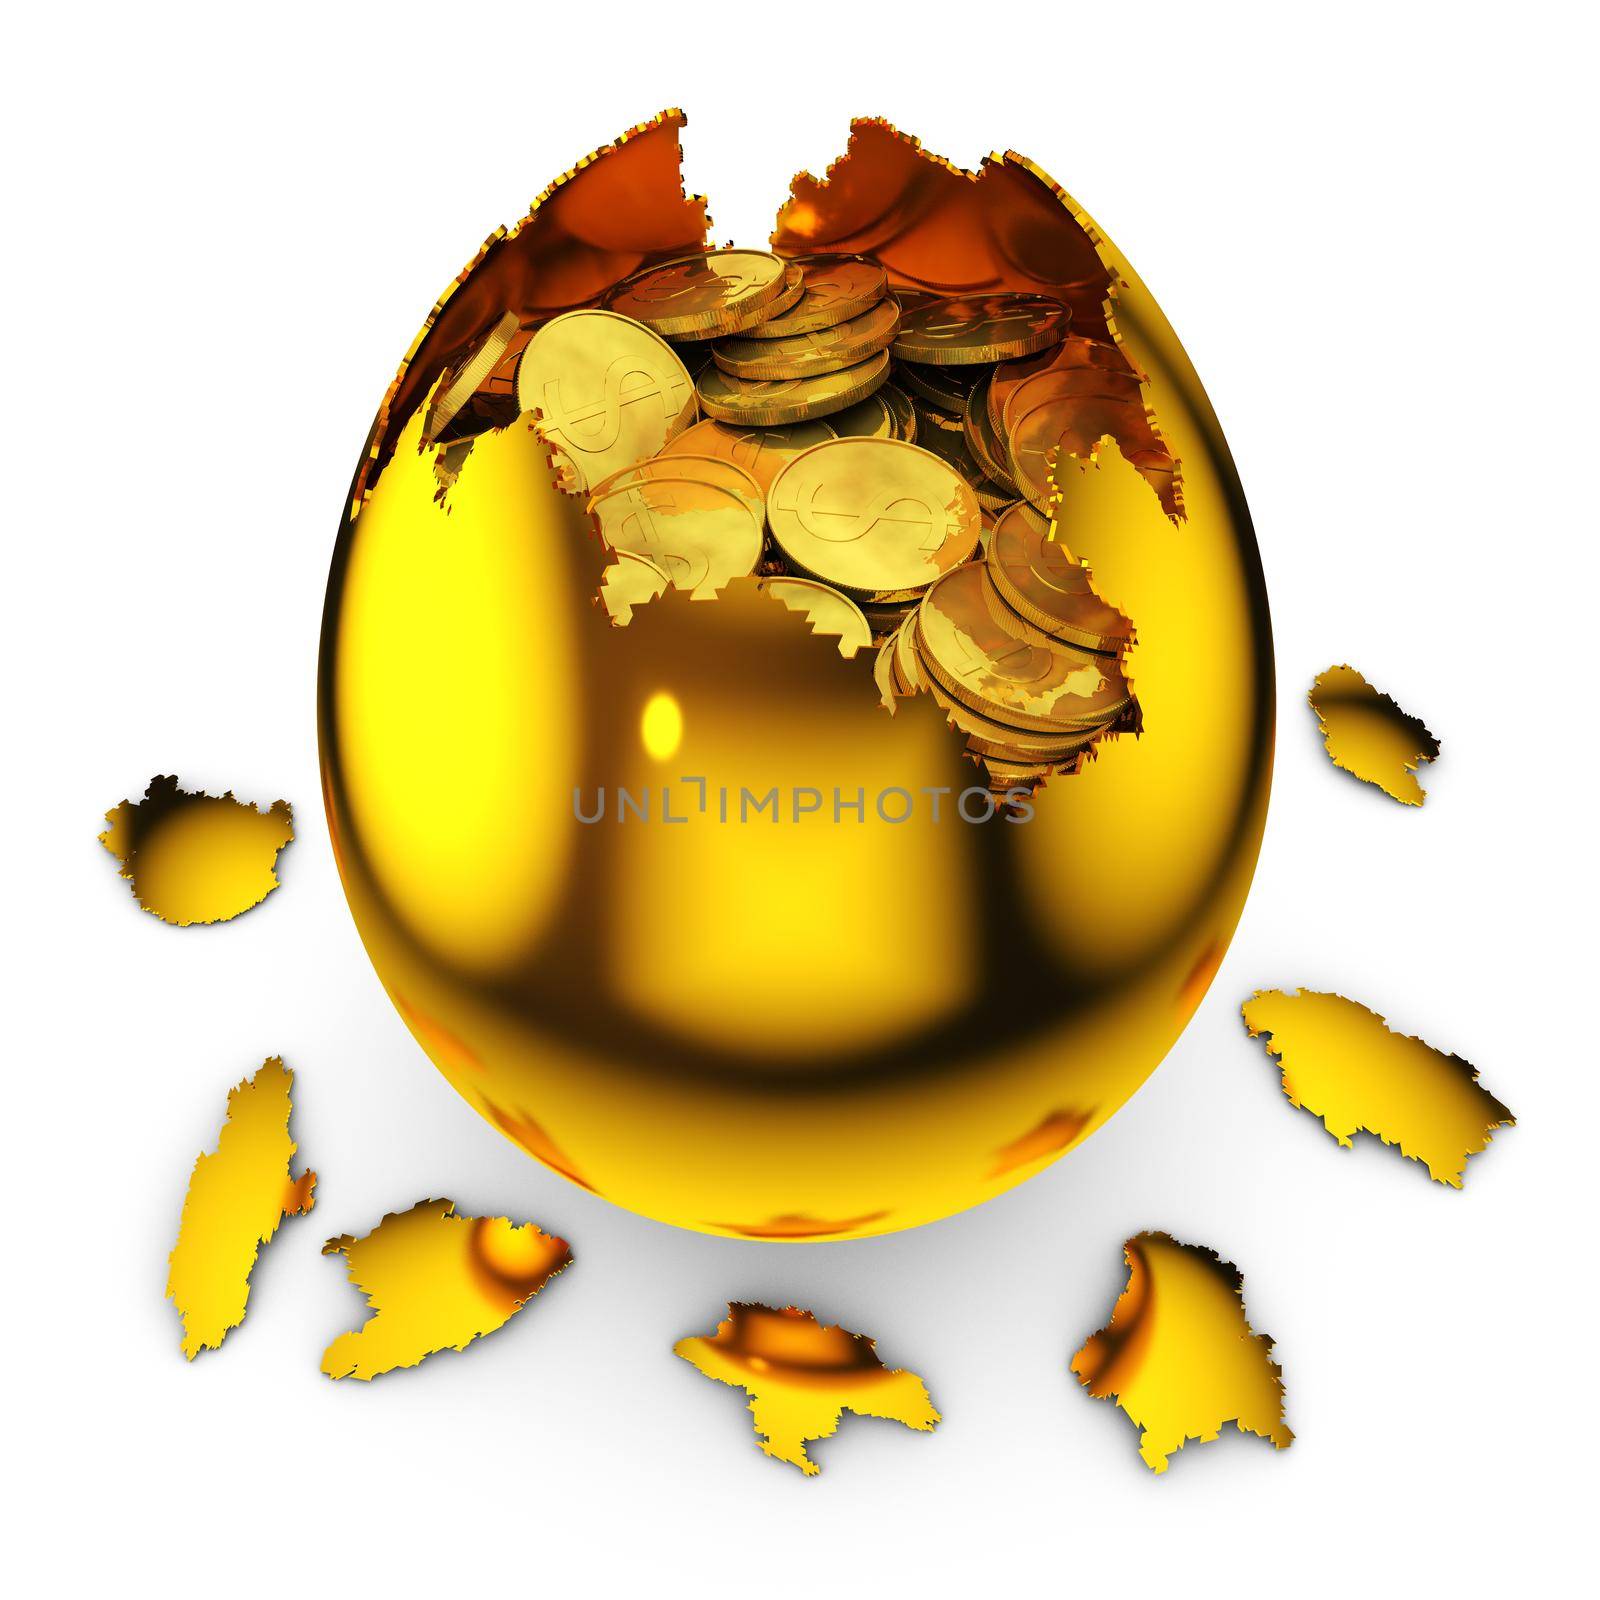 smashed golden egg with dollar coins inside